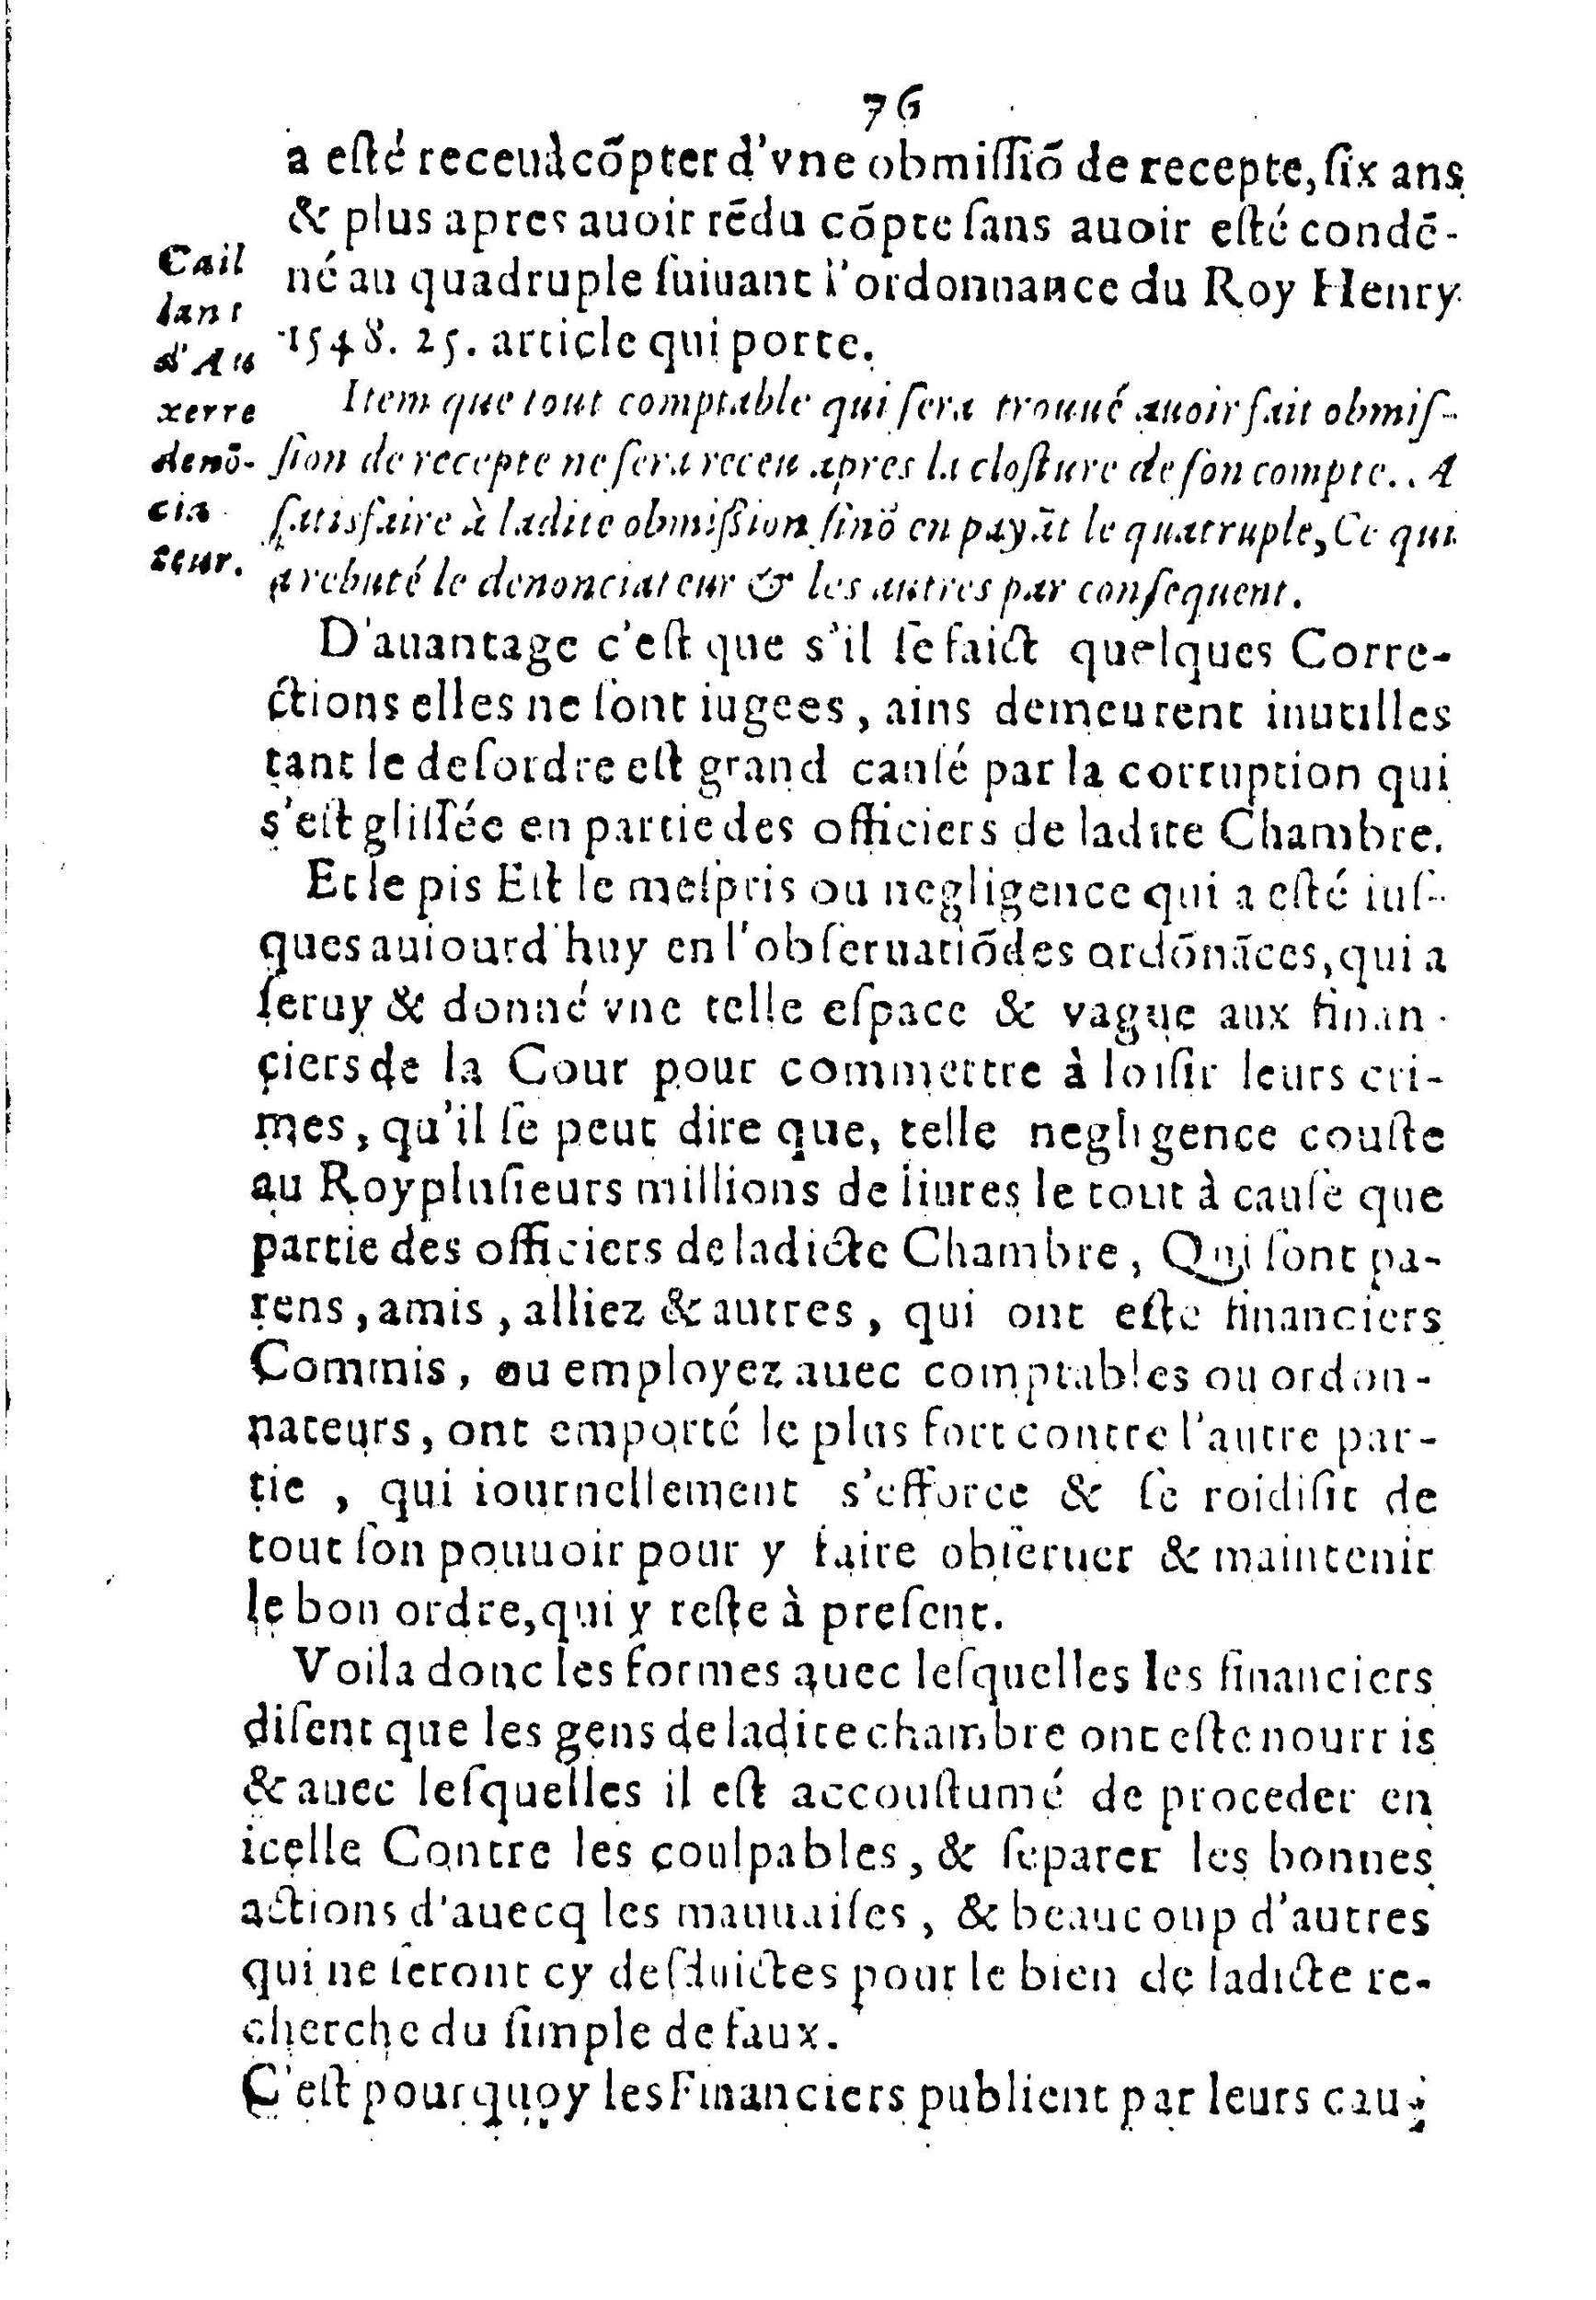 1615 - s.n. - Trésor des trésors de France - BnF_Page_075.jpg